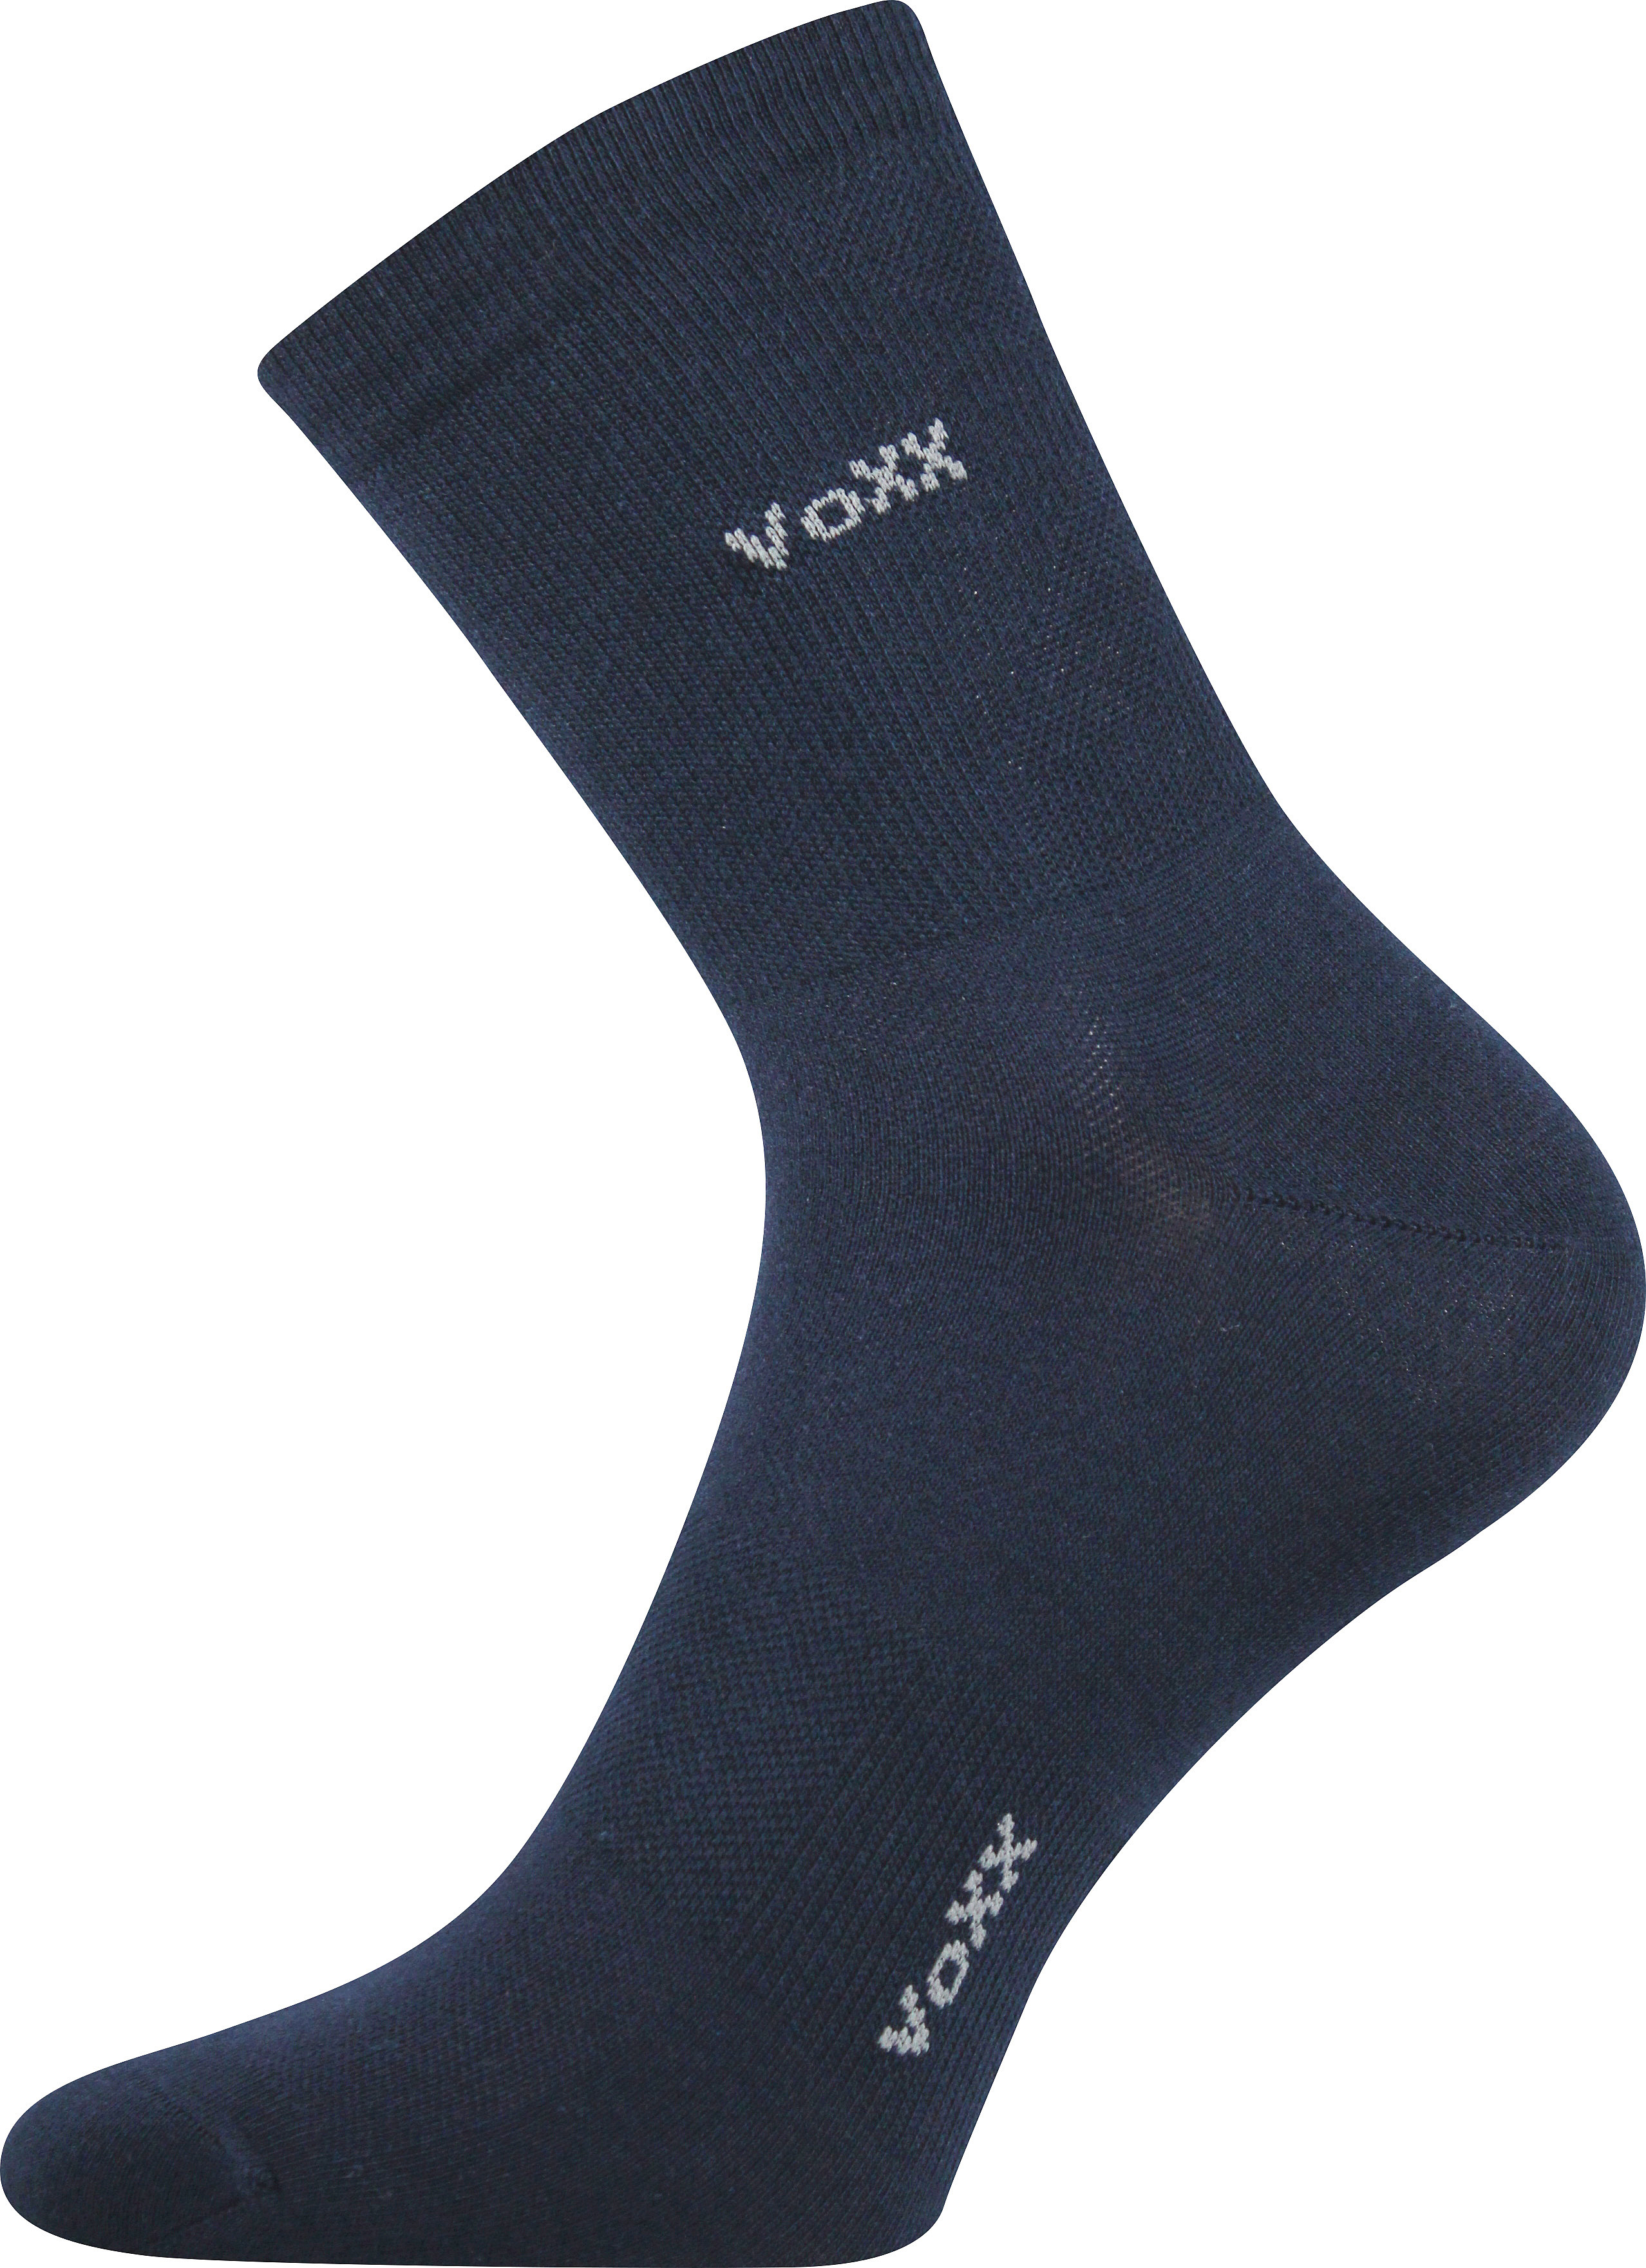 Ponožky sportovní Voxx Horizon - navy, 43-46